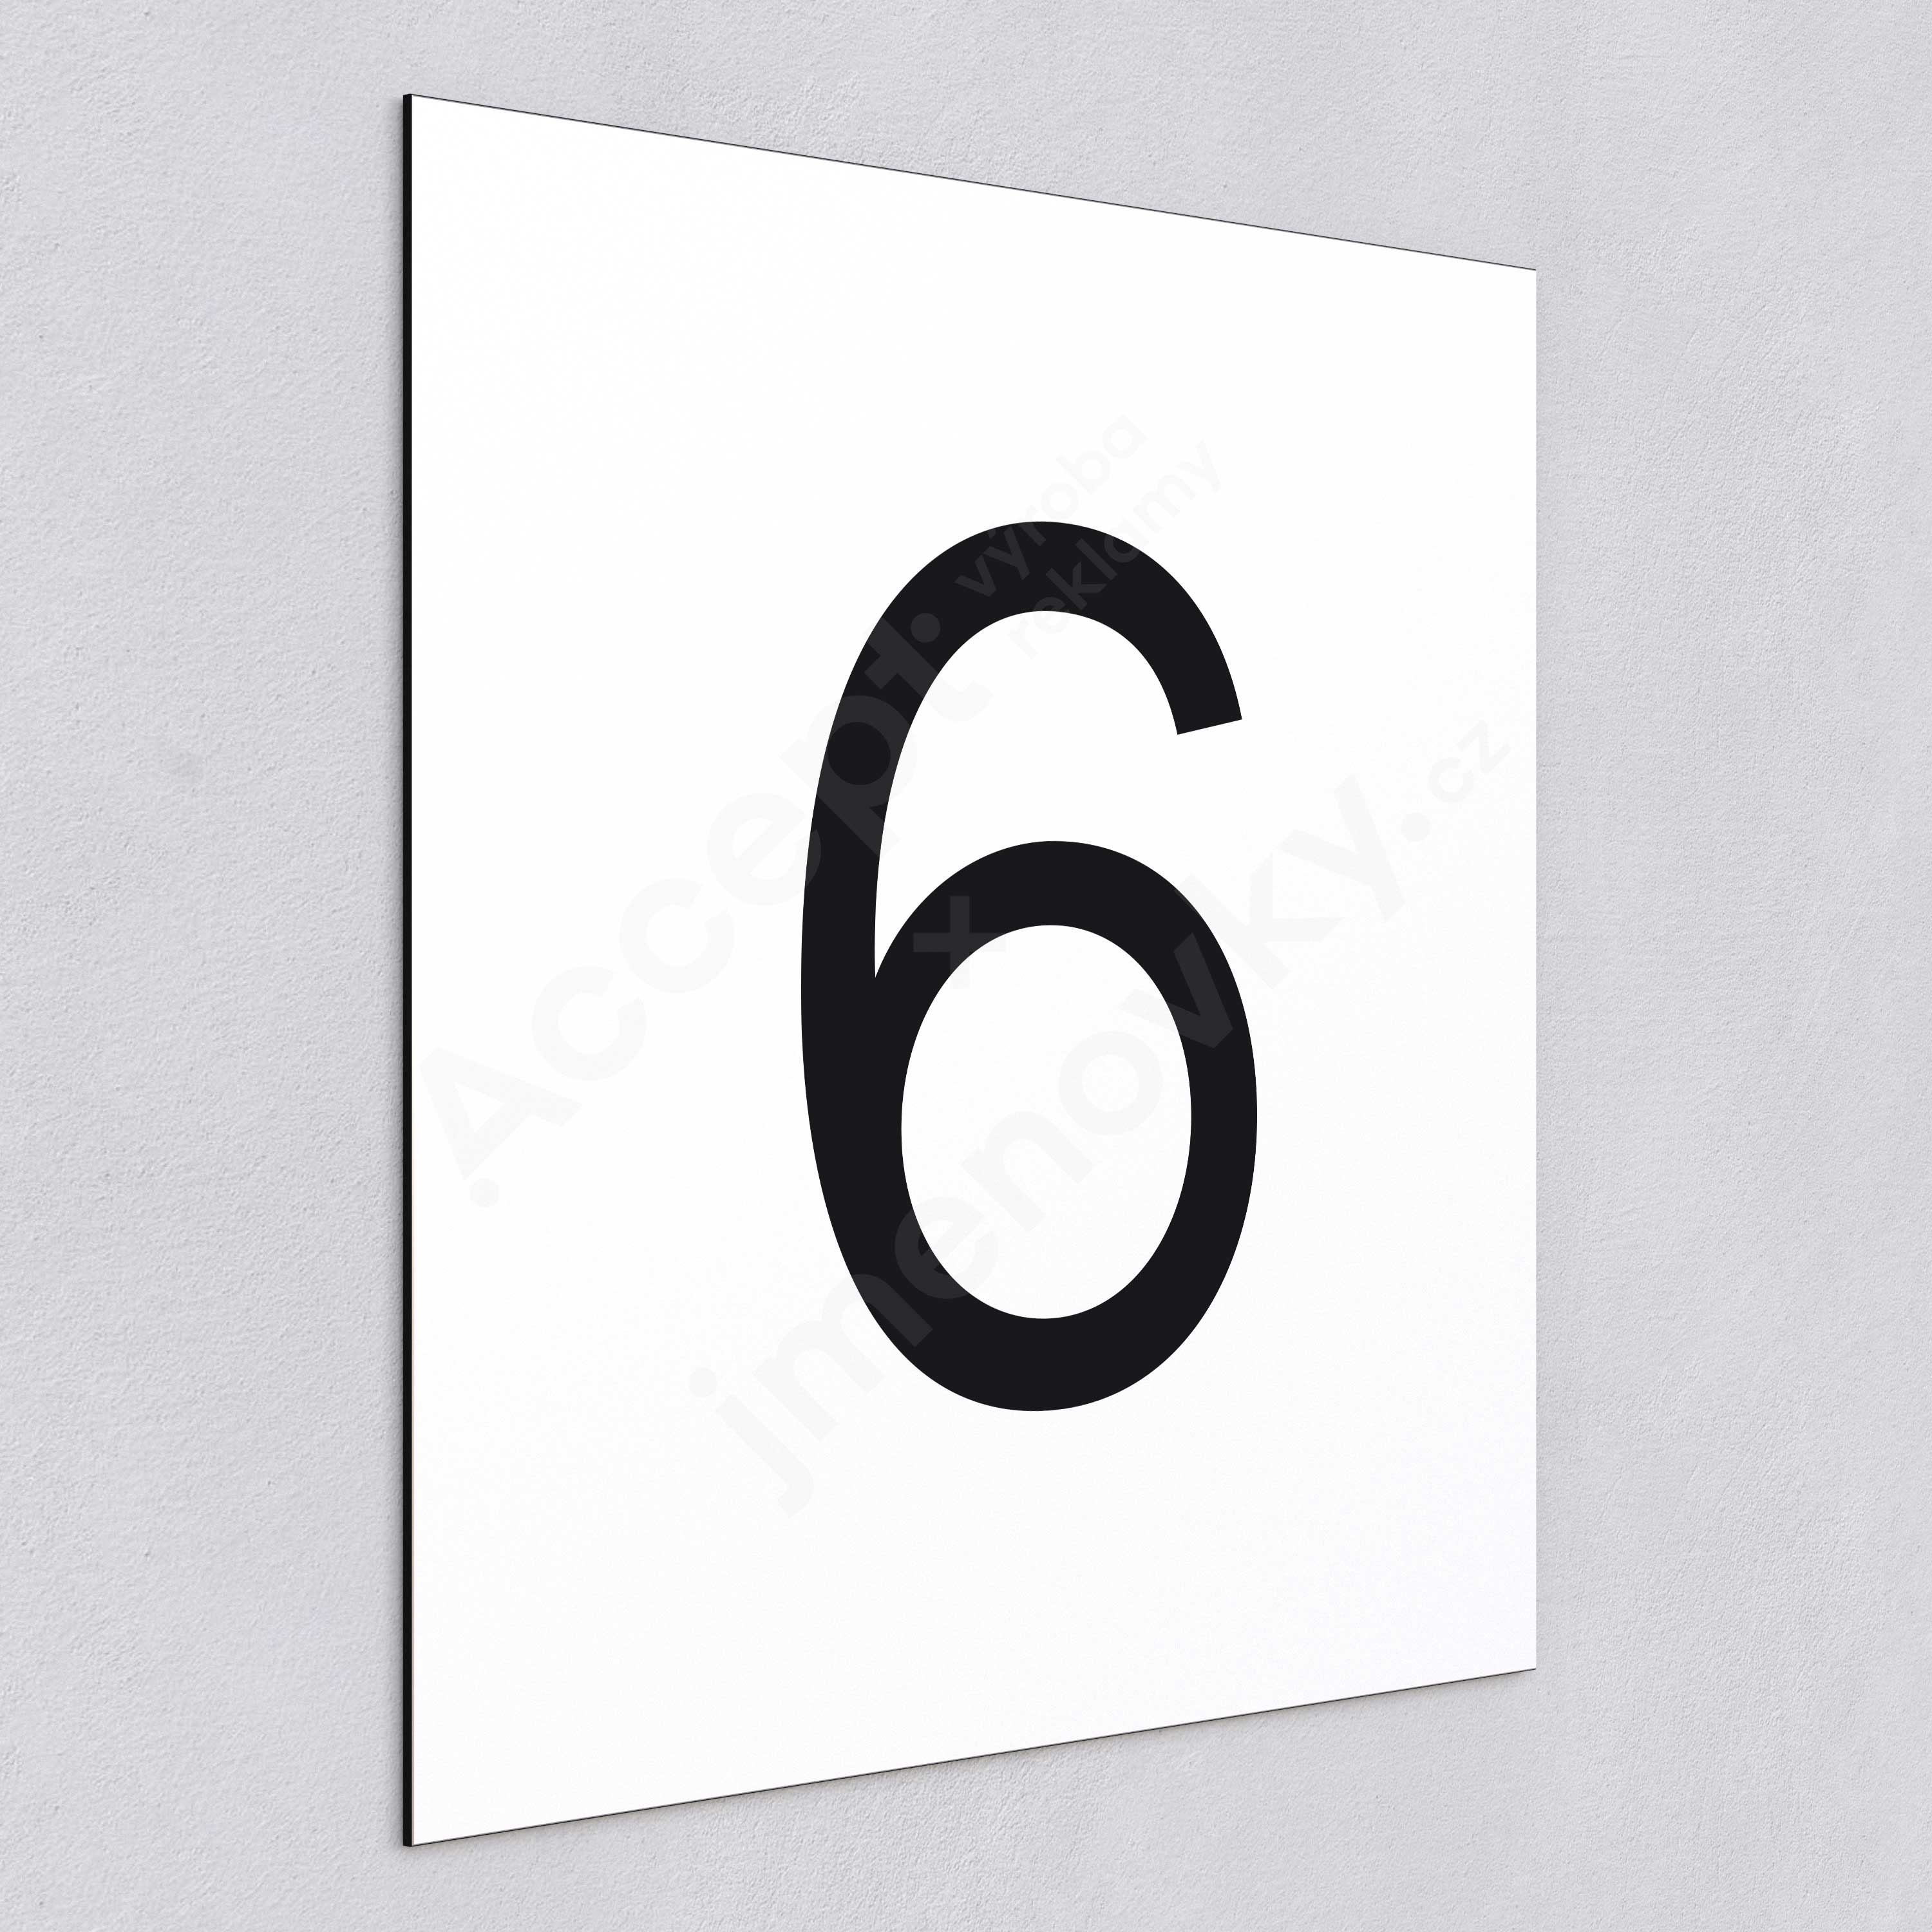 Označení podlaží - číslo "6" - bílá tabulka - černý popis